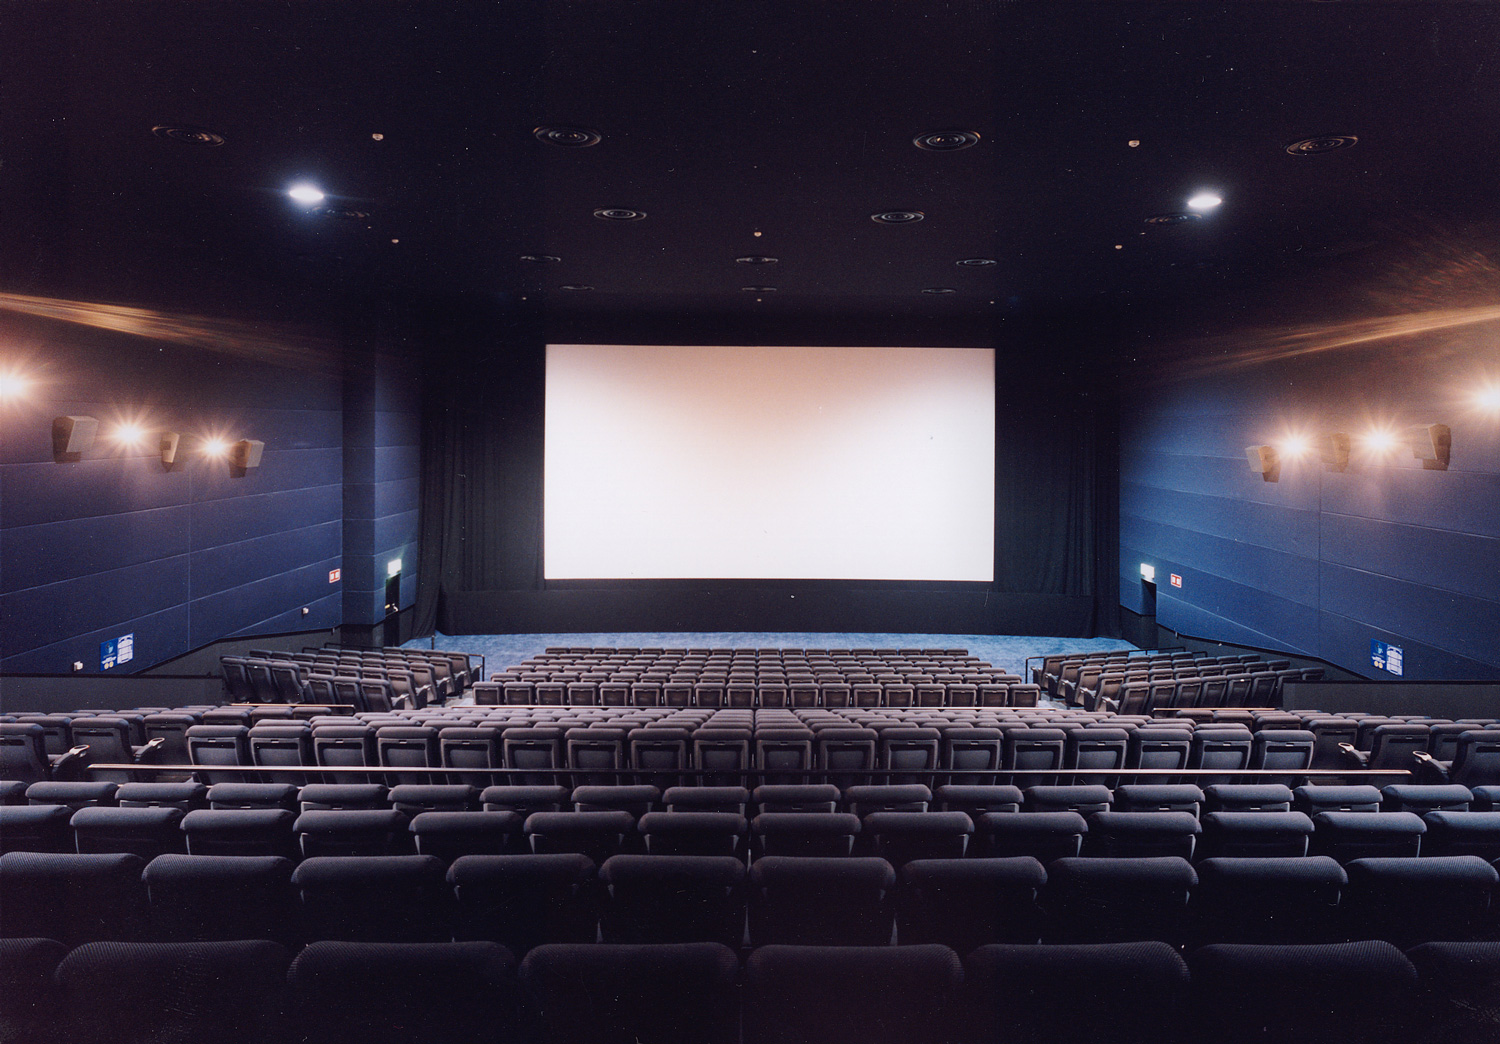 ユナイテッド シネマ 稲沢 より快適に映画鑑賞をお楽しみいただける 稲沢市唯一の映画館です クルル